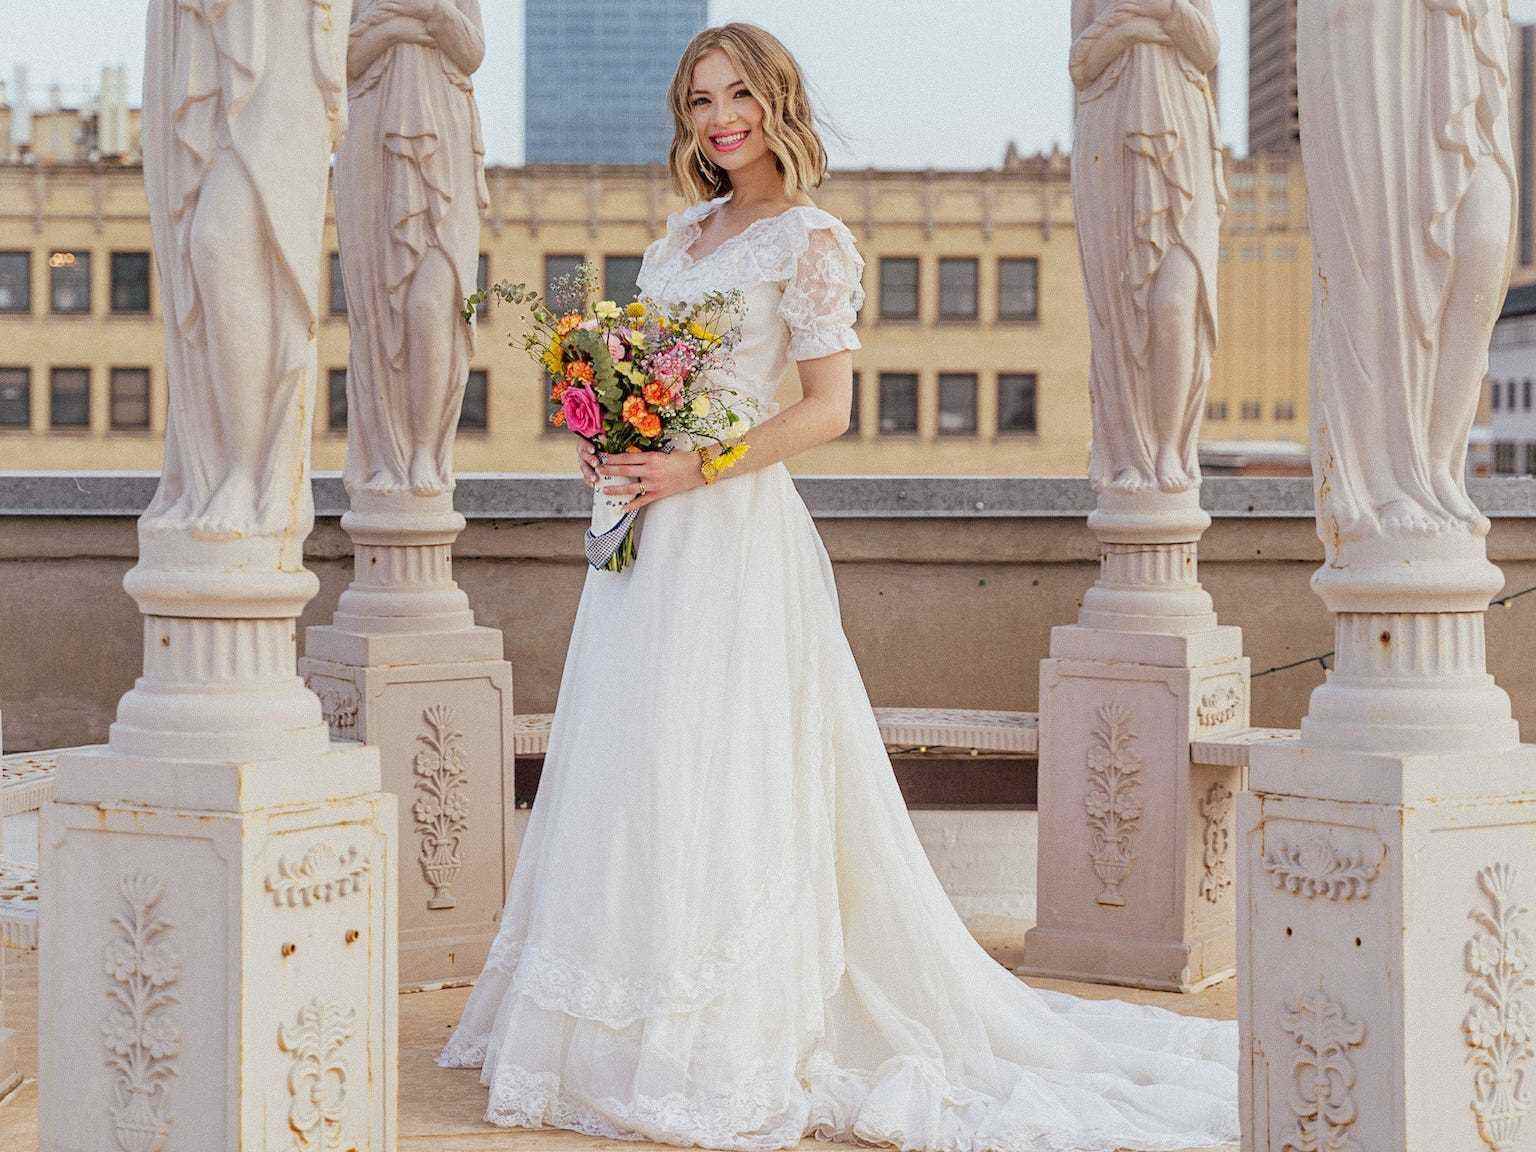 Eine Braut steht in ihrem Hochzeitskleid inmitten von Statuen.